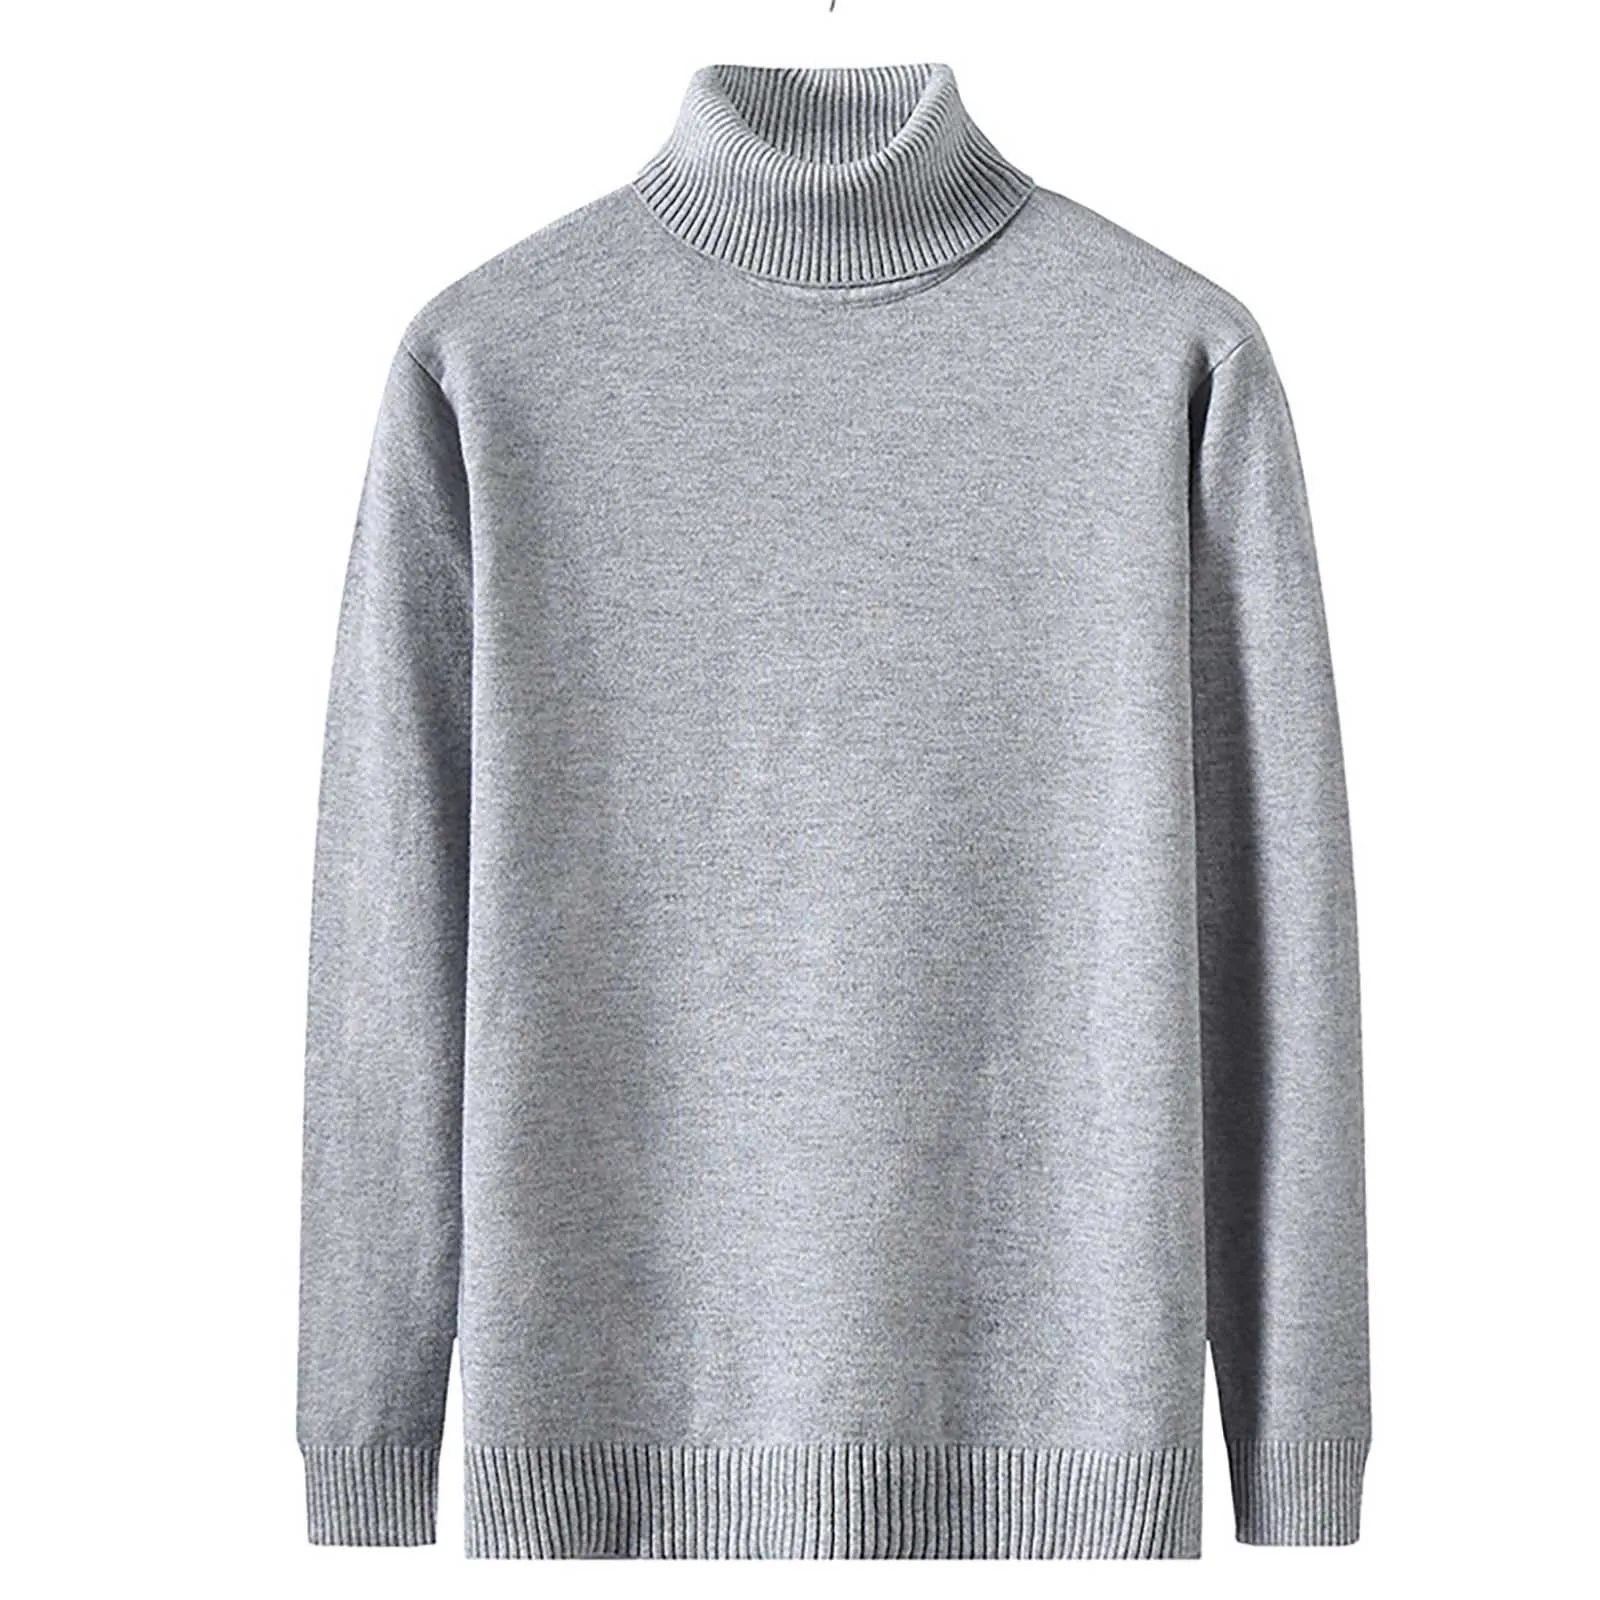 Свитер высокого качества, пуловер, модные топы, вязаные свитера, Мужской флисовый джемпер, вязаная одежда, осень-зима, теплая одежда с длинным рукавом